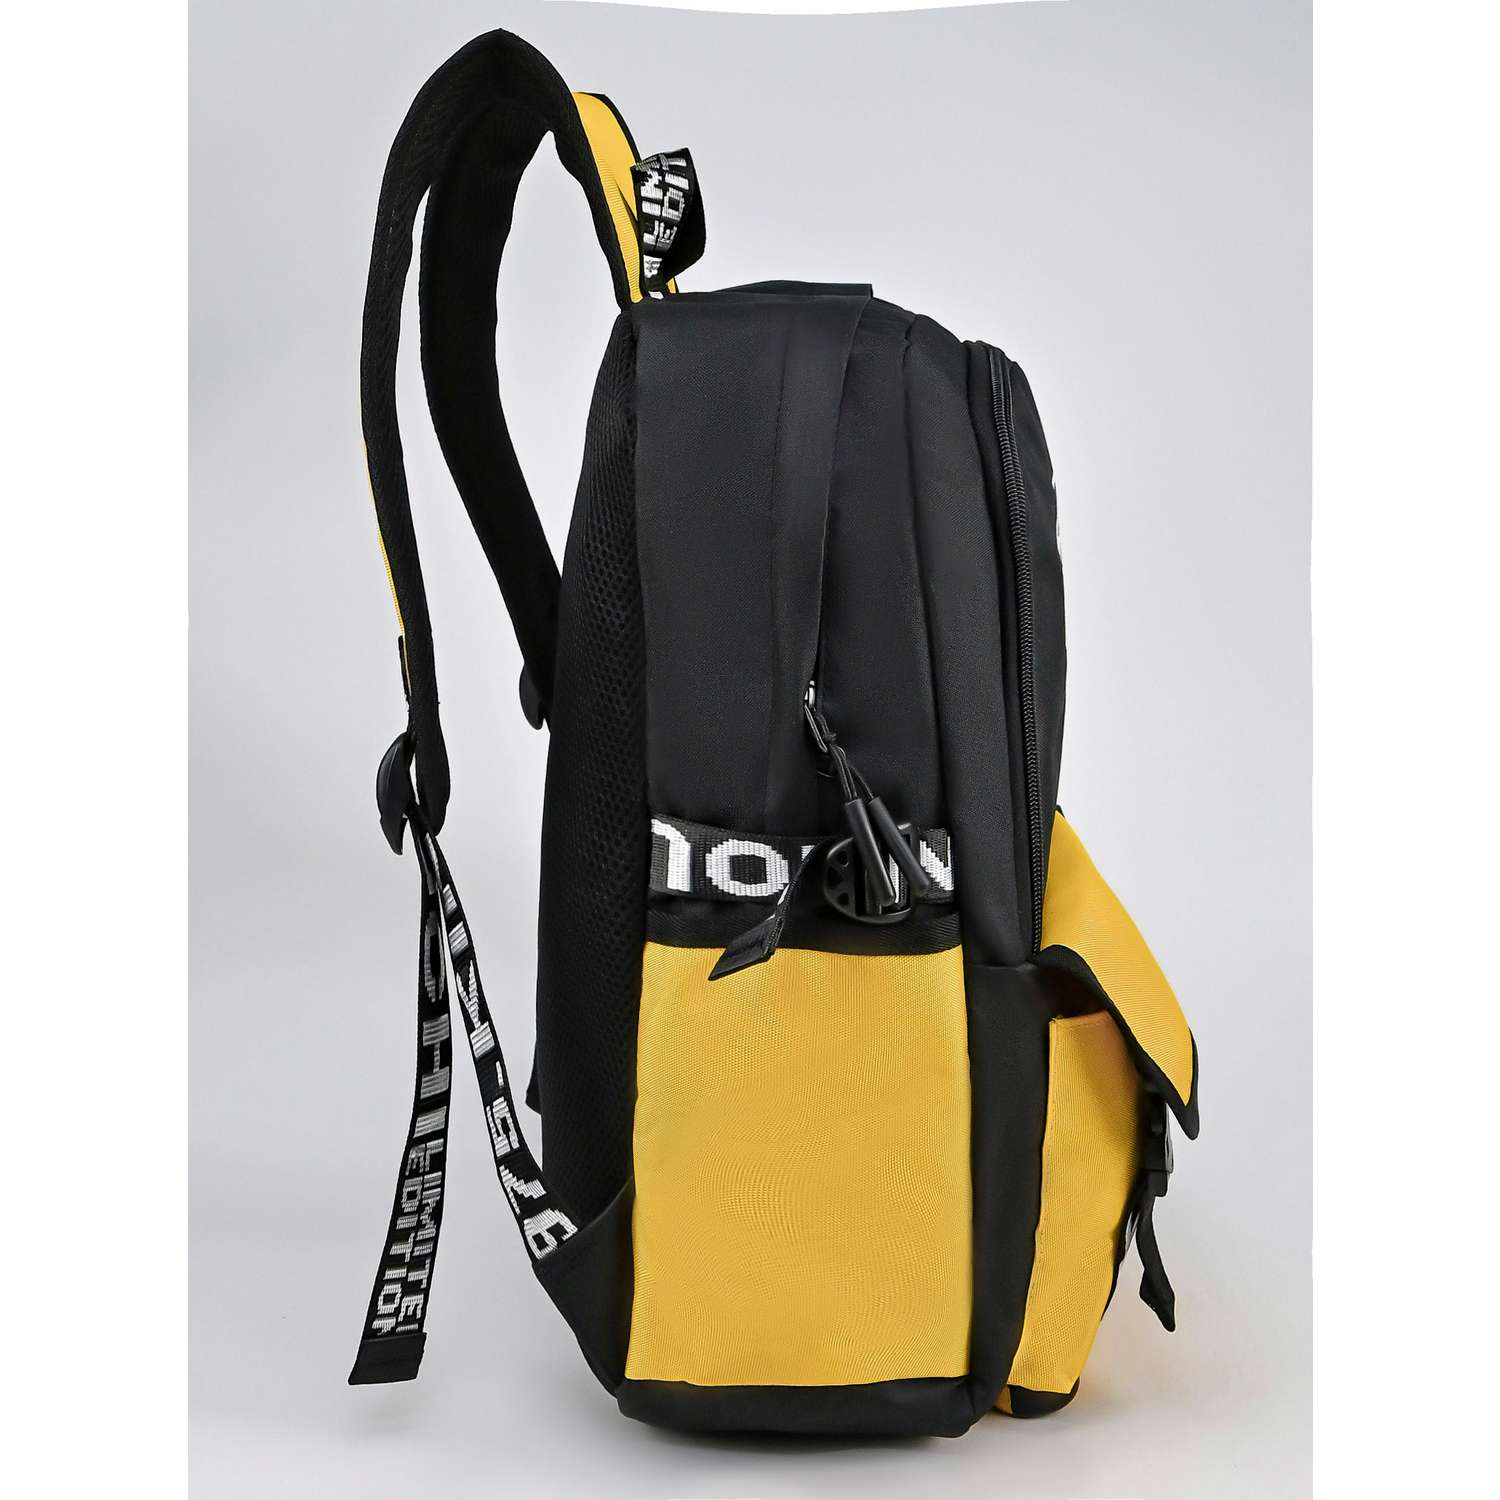 Рюкзак школьный Evoline Черный желтый с Пикачу PIKO-100 - фото 2